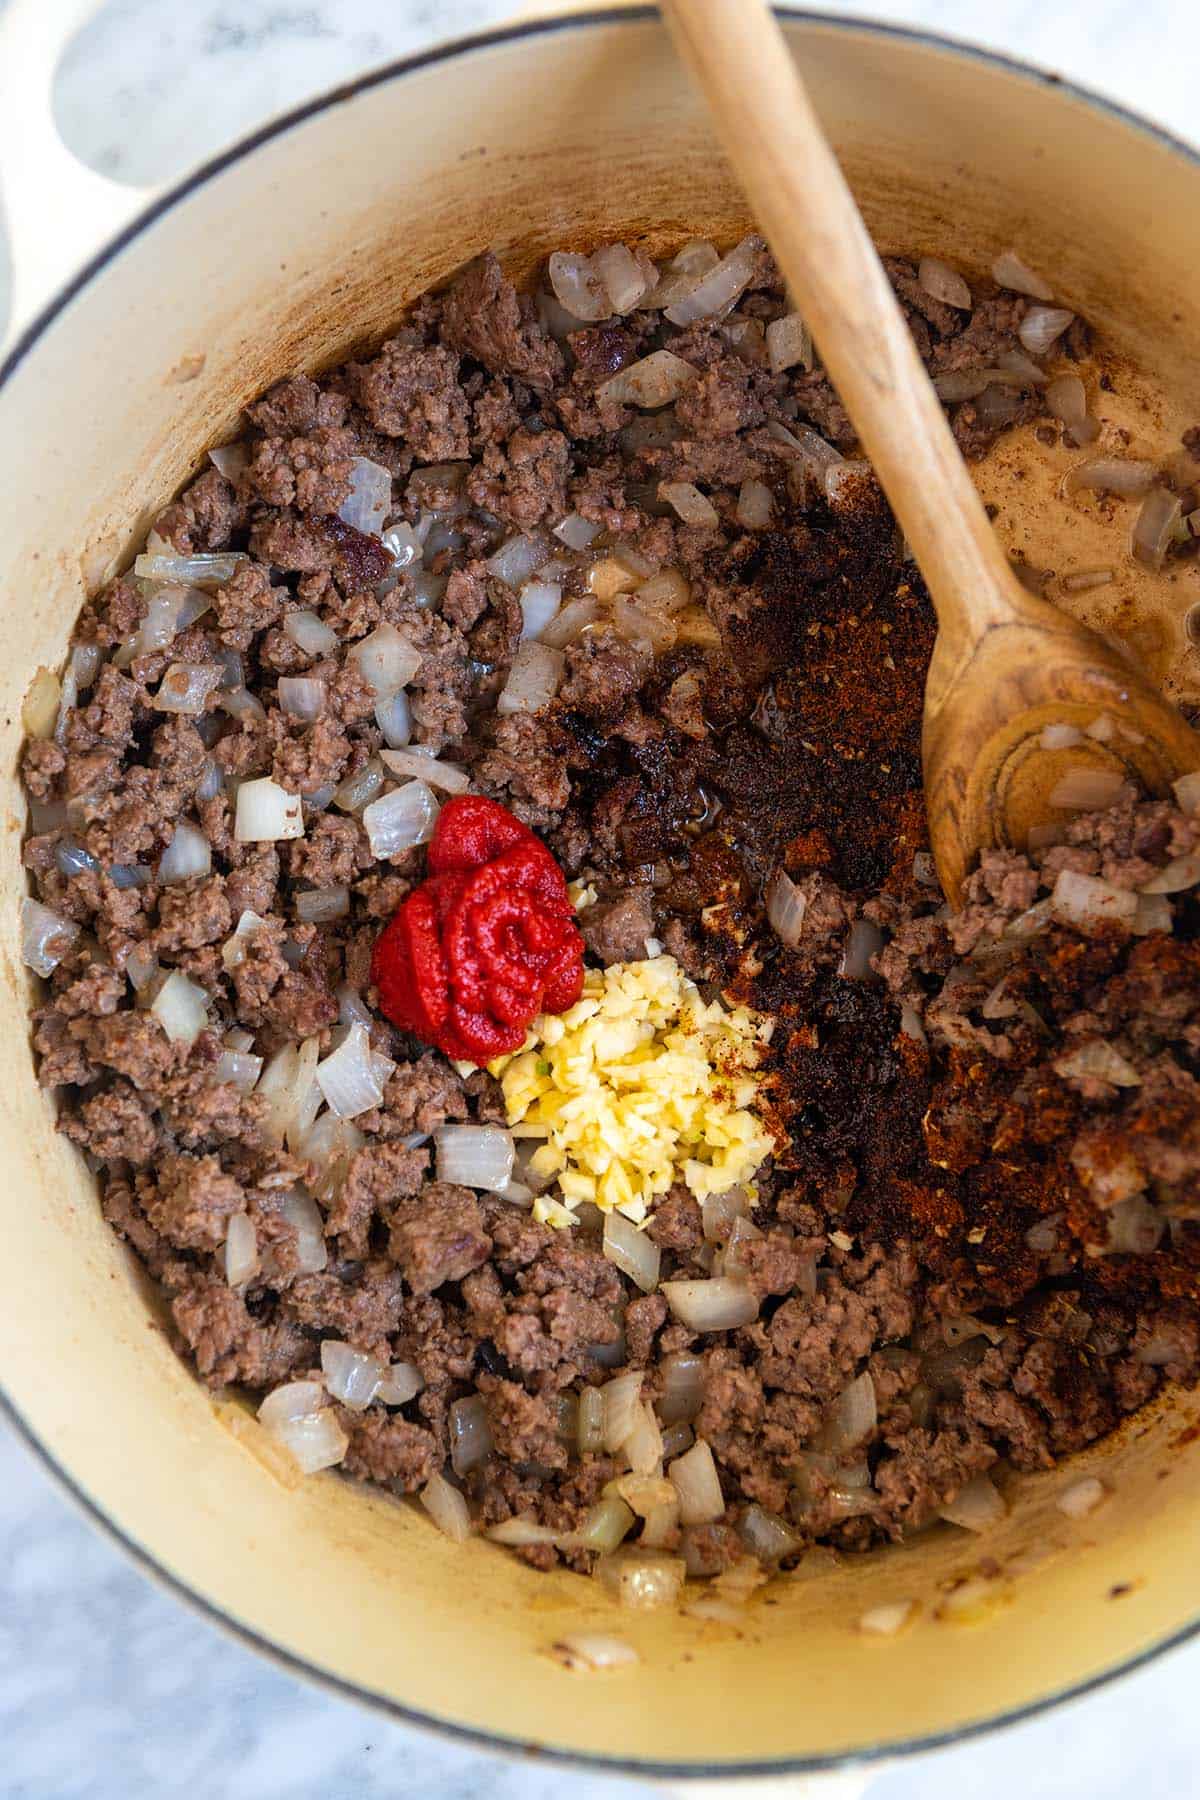 Faire du chili maison avec du boeuf haché, de l'oignon, de l'ail et des épices.